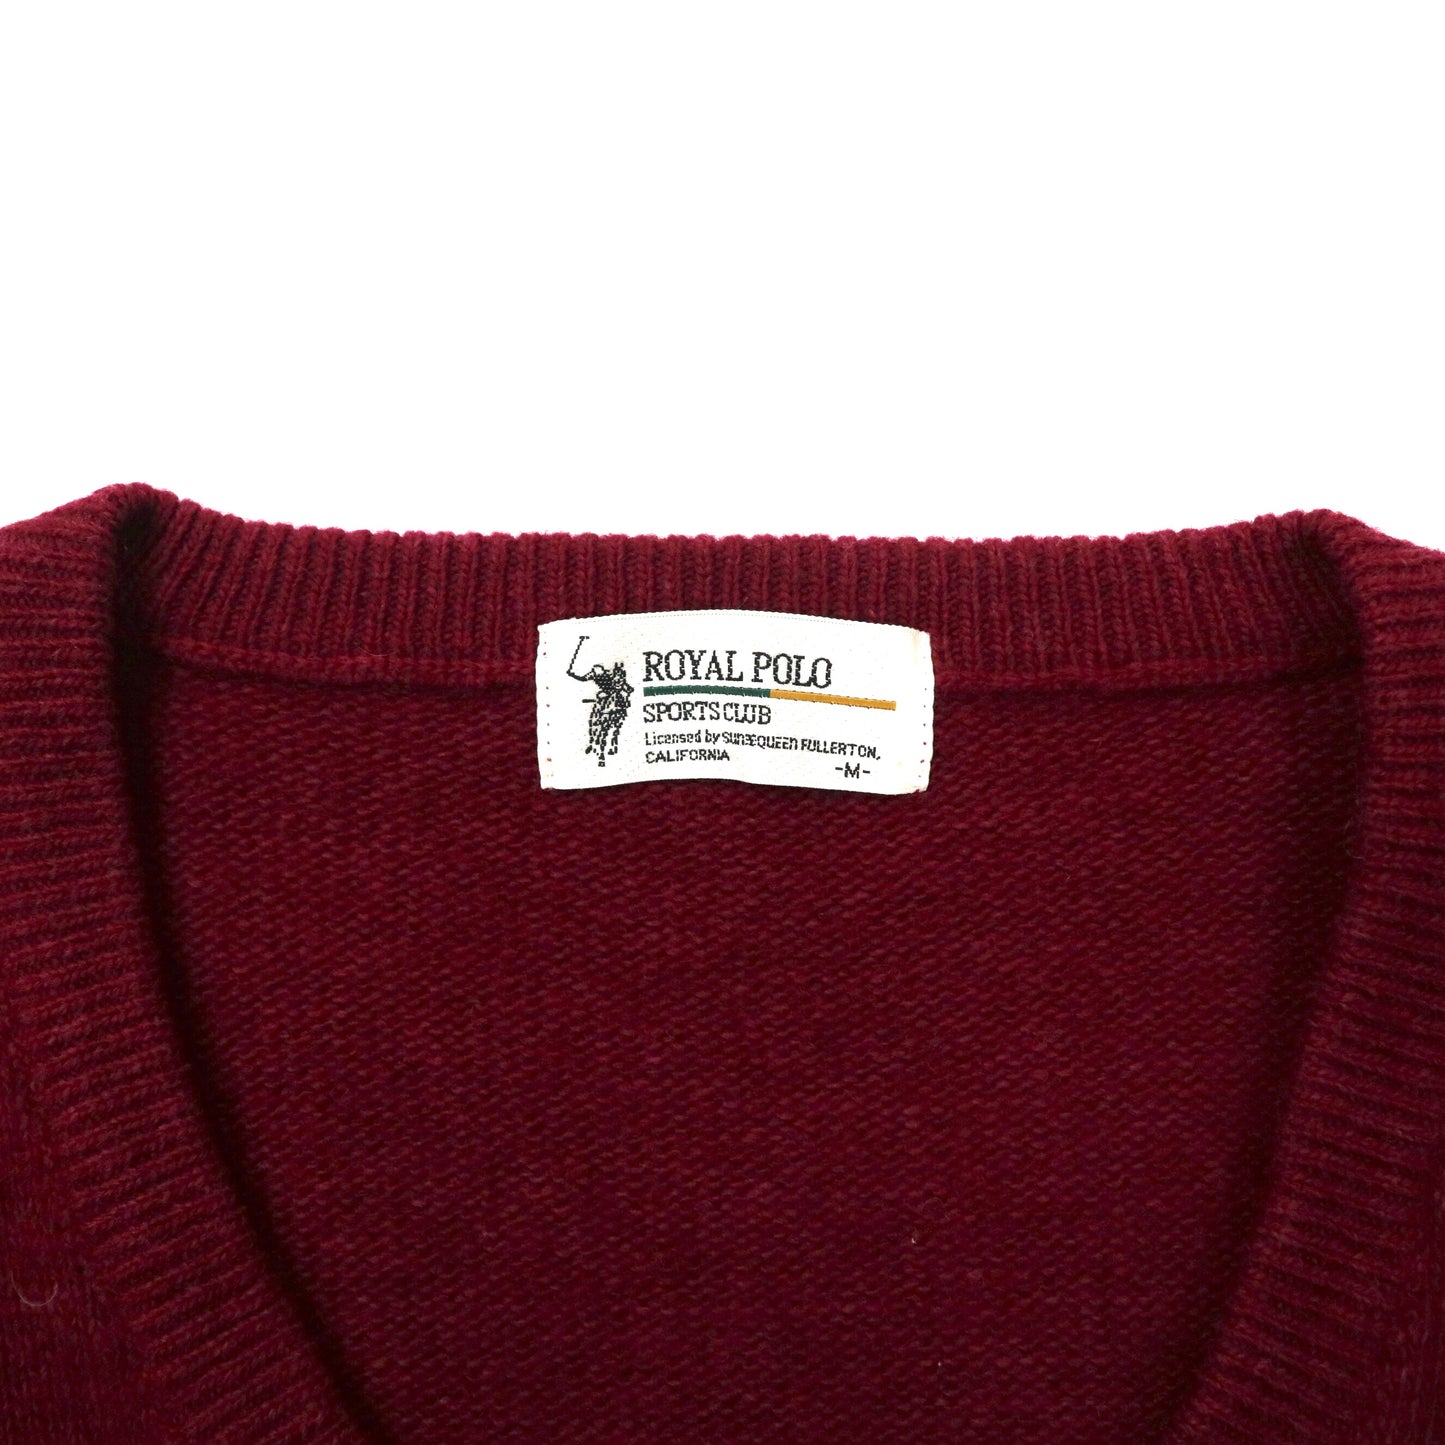 ROYAL POLO SPORTS CLUB Vネックニット セーター M ボルドー ウール ワンポイントロゴ刺繍